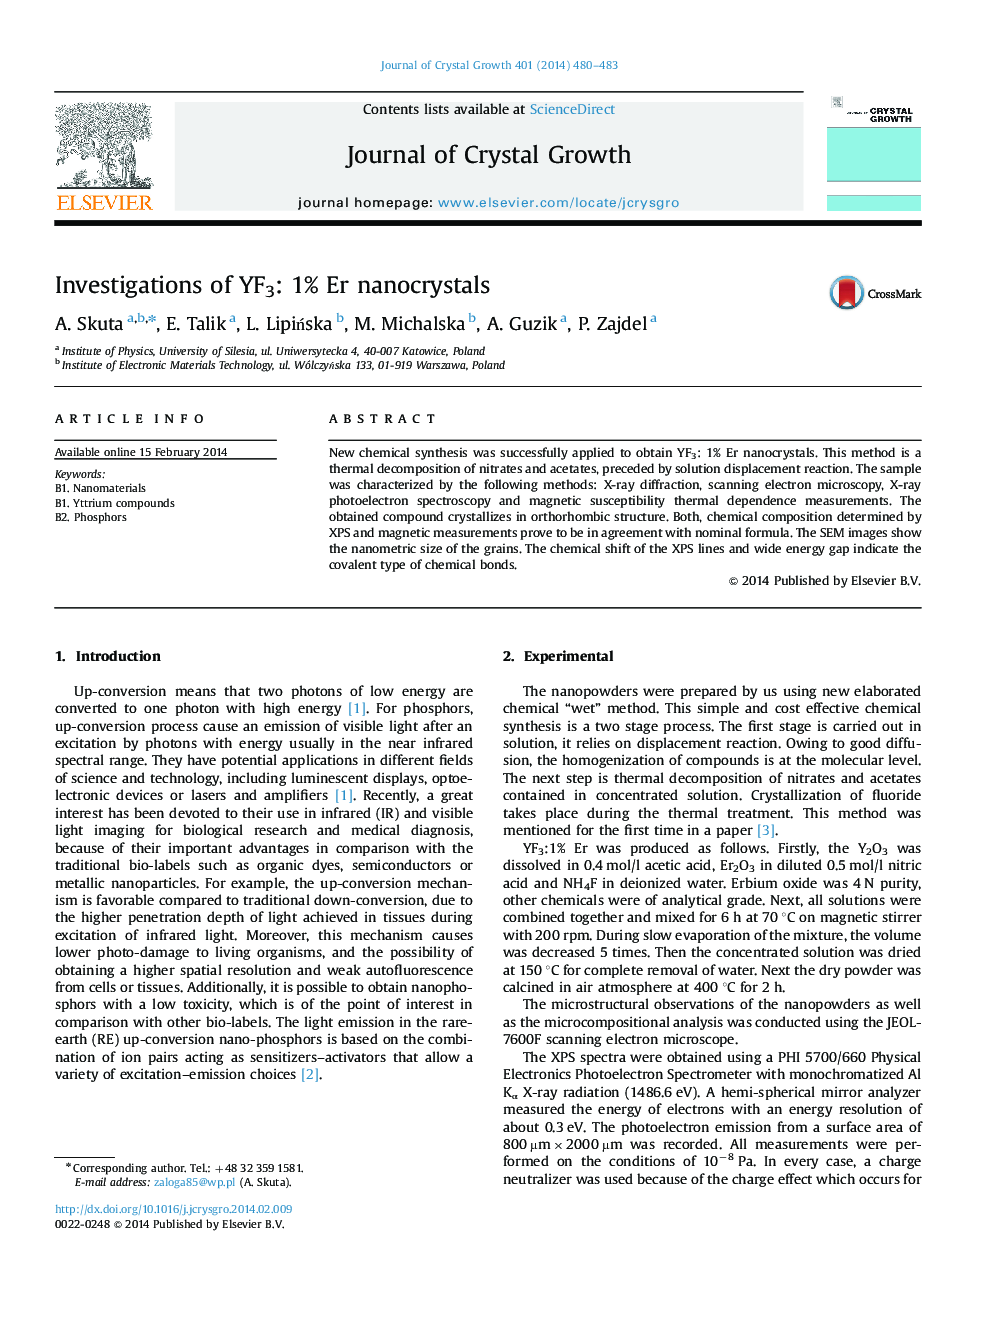 Investigations of YF3: 1% Er nanocrystals